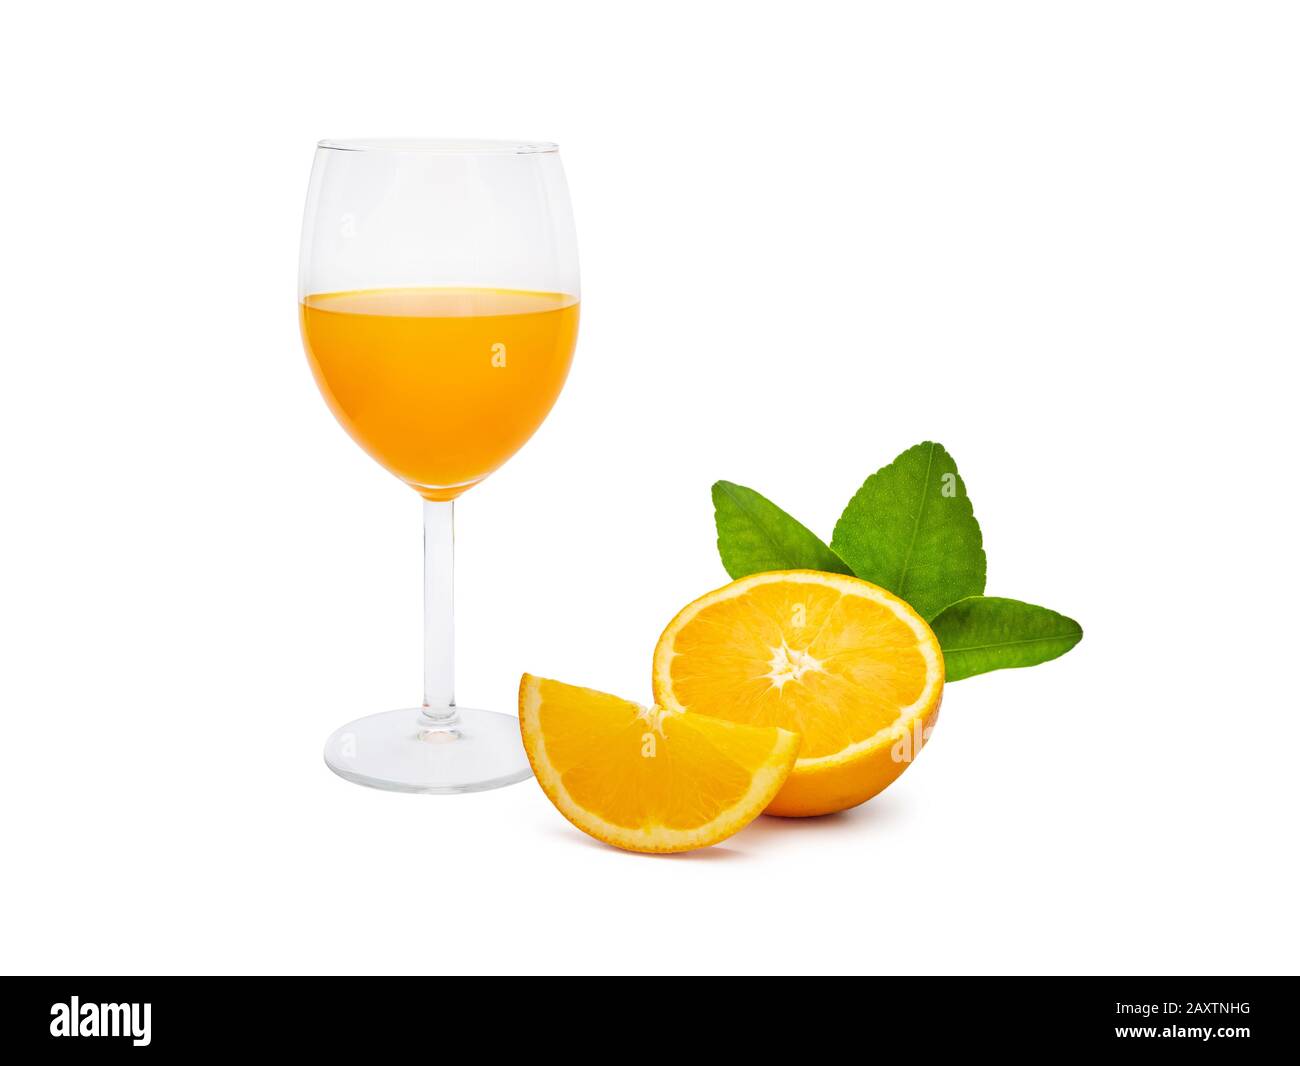 Ein Glas frischen Orangensaft und eine Gruppe von frischen Orangenfrüchten mit grünen Blättern, isoliert auf weißem Hintergrund. Obstprodukt-Display oder Montage, Niete Stockfoto